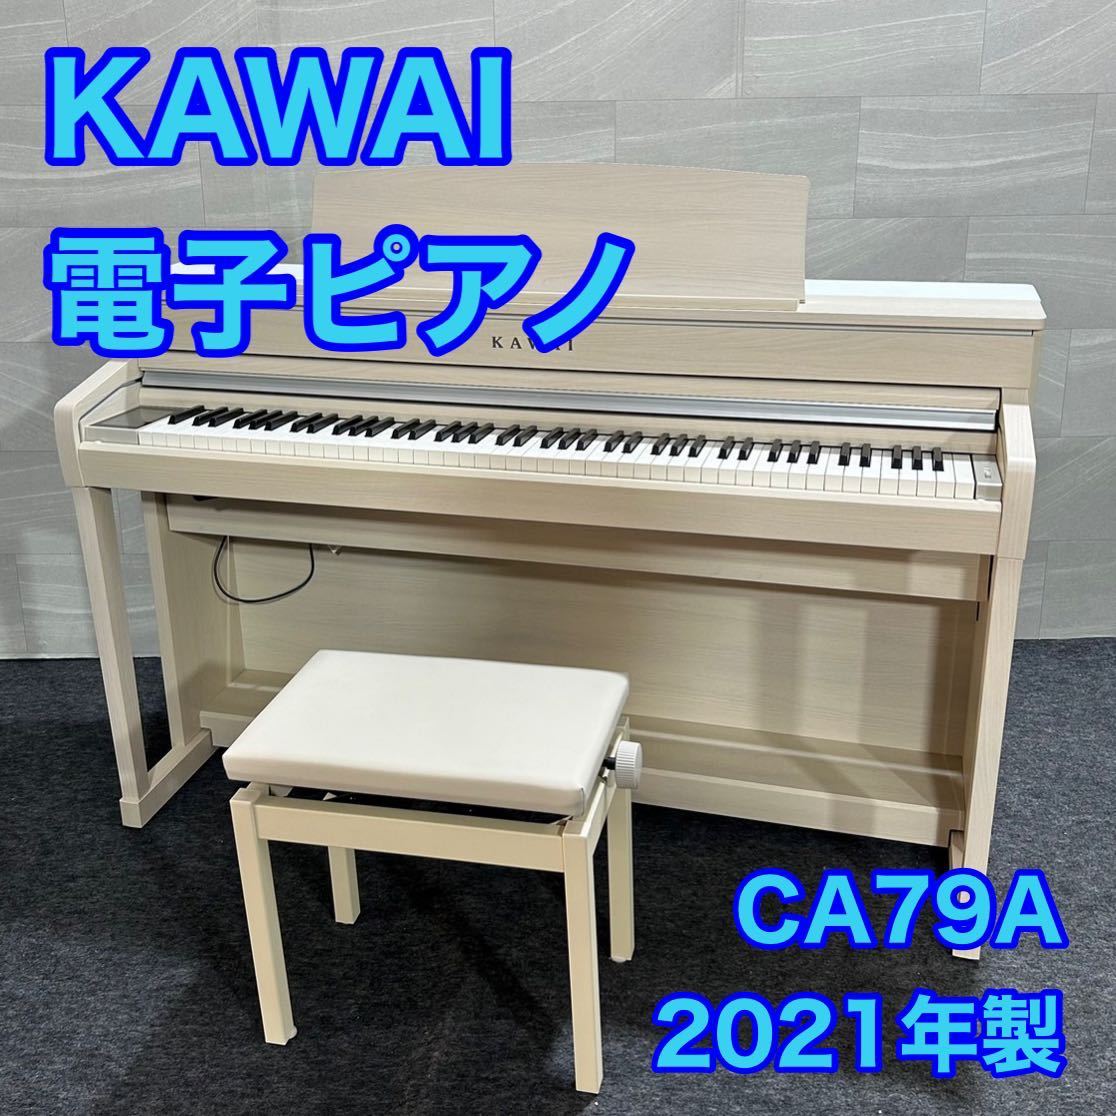 KAWAI 電子ピアノ 88鍵 Concert Artist CA79A 2021年製 d1591 カワイ デジタルピアノ 高性能 タッチパネル ハイグレードモデル_画像1